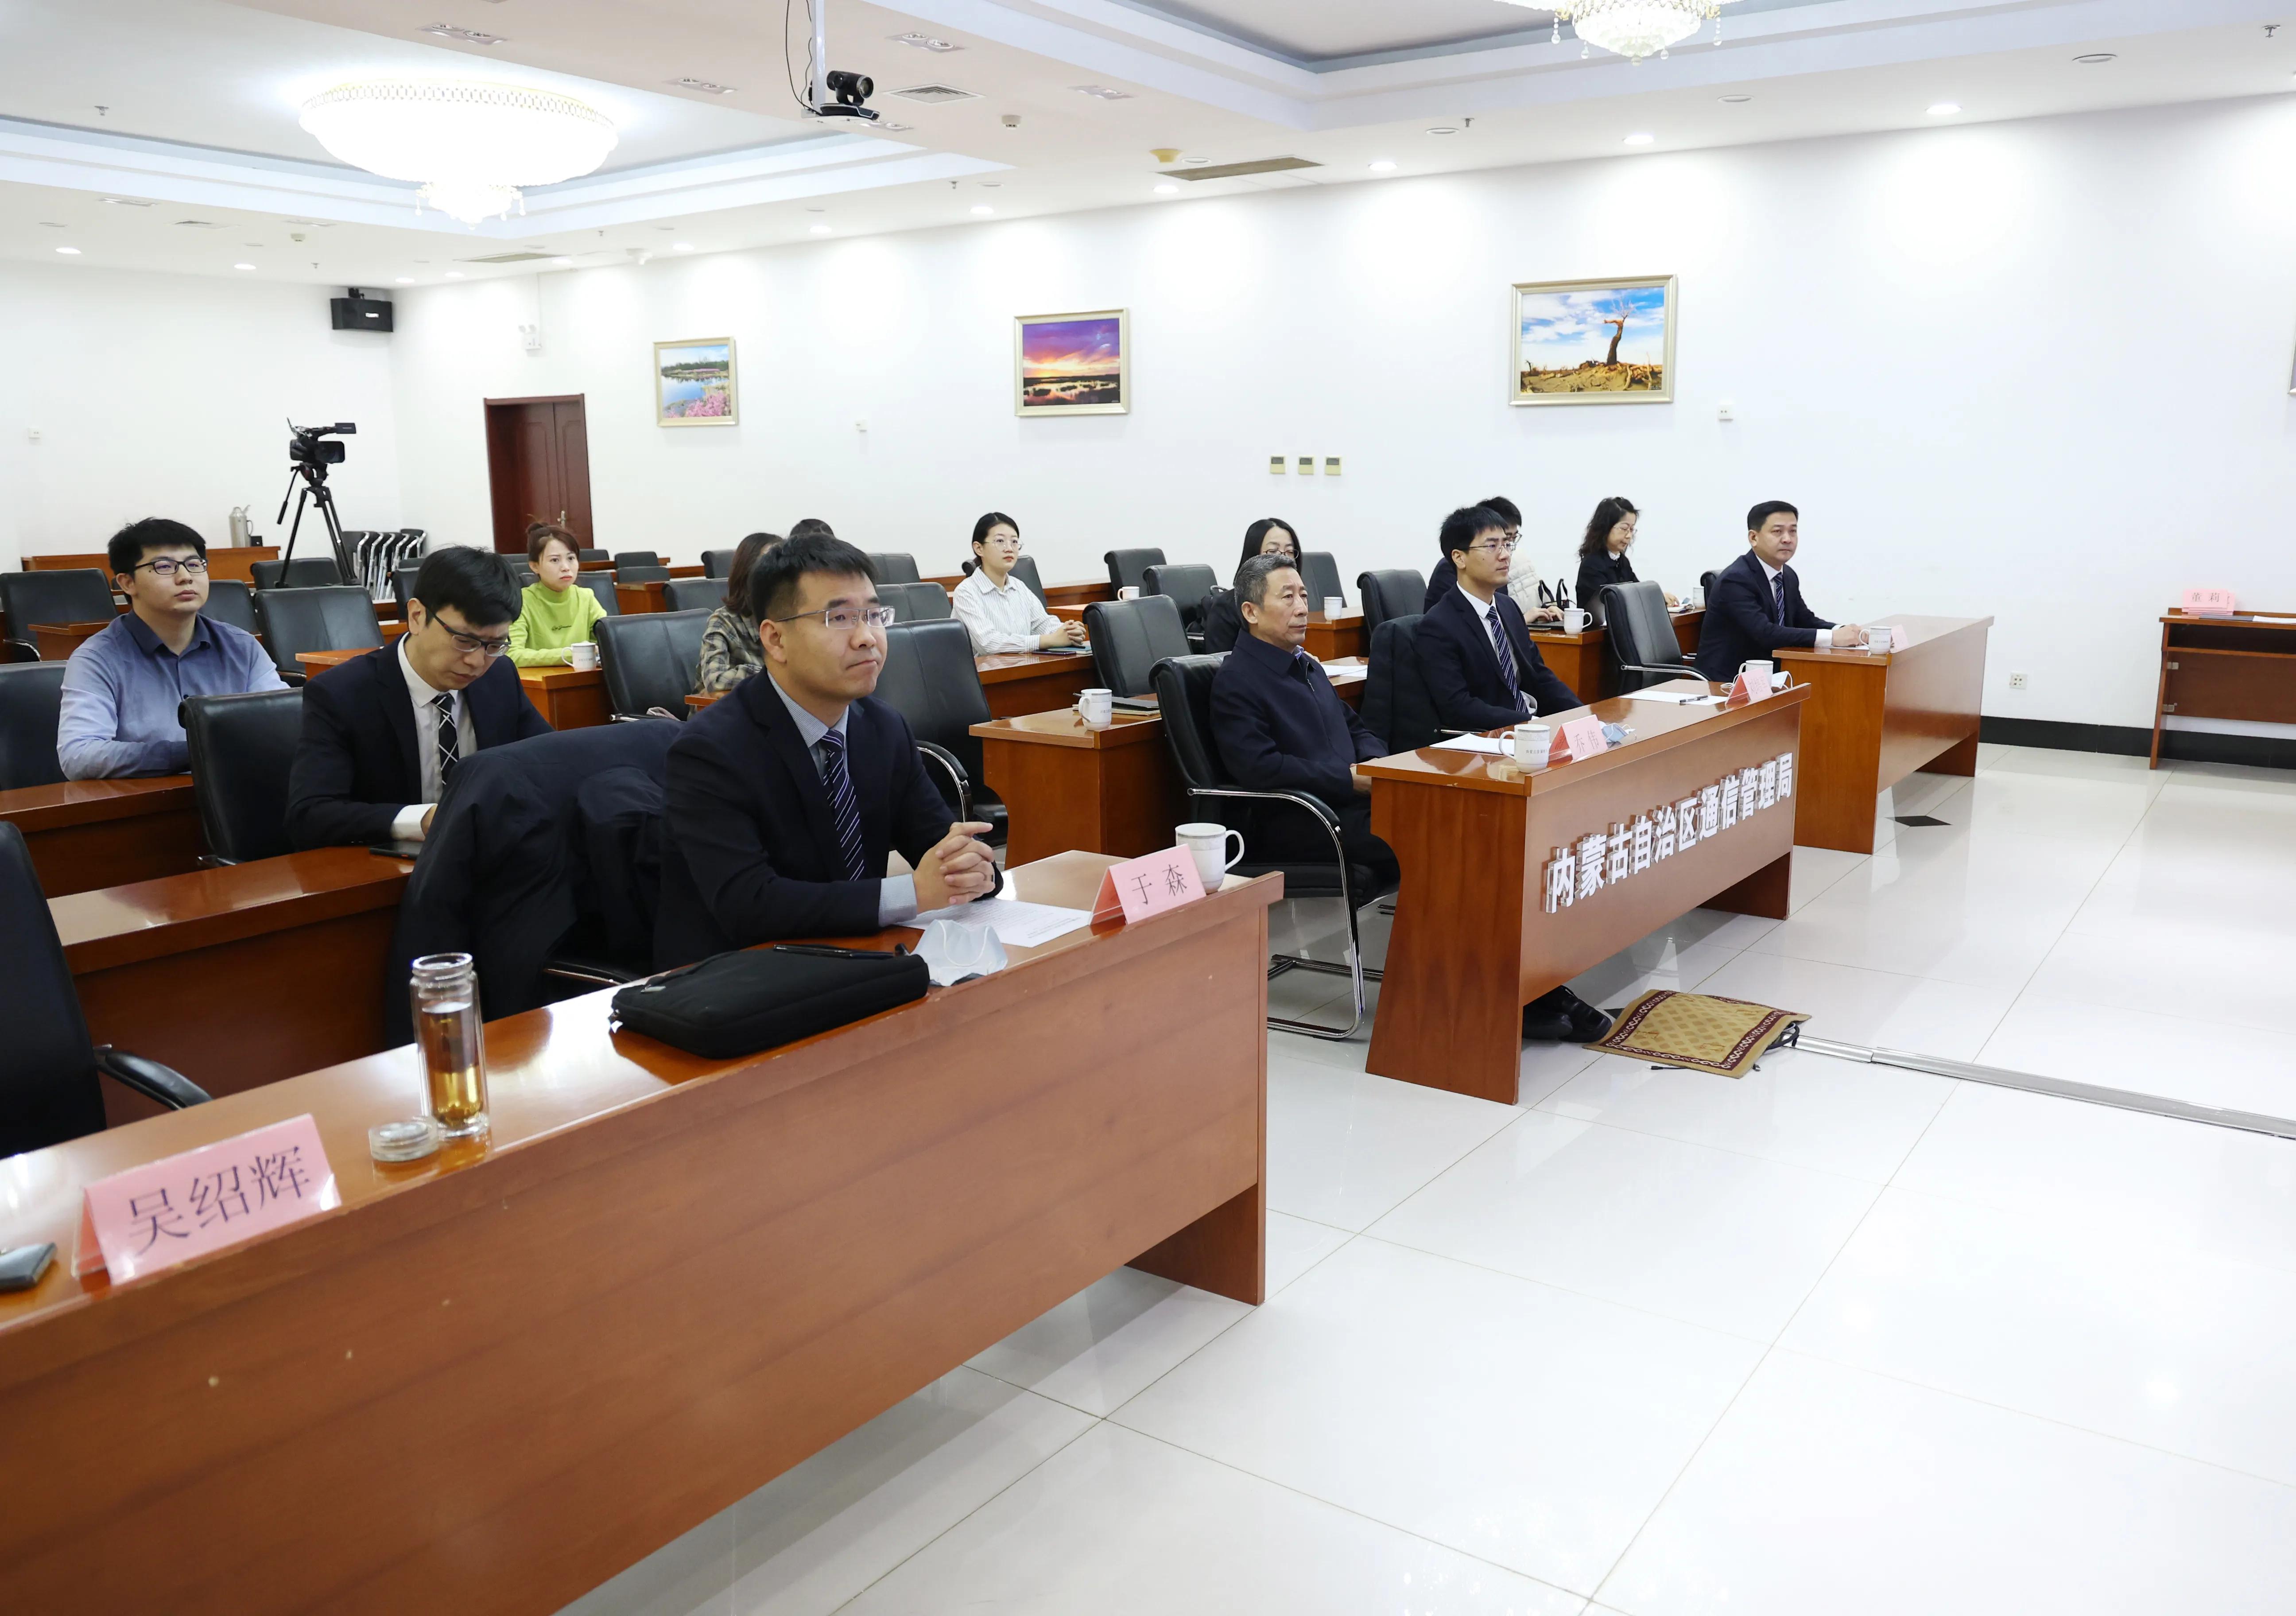 内蒙古数字信息喜获自治区首张工业互联网标识注册服务机构许可证